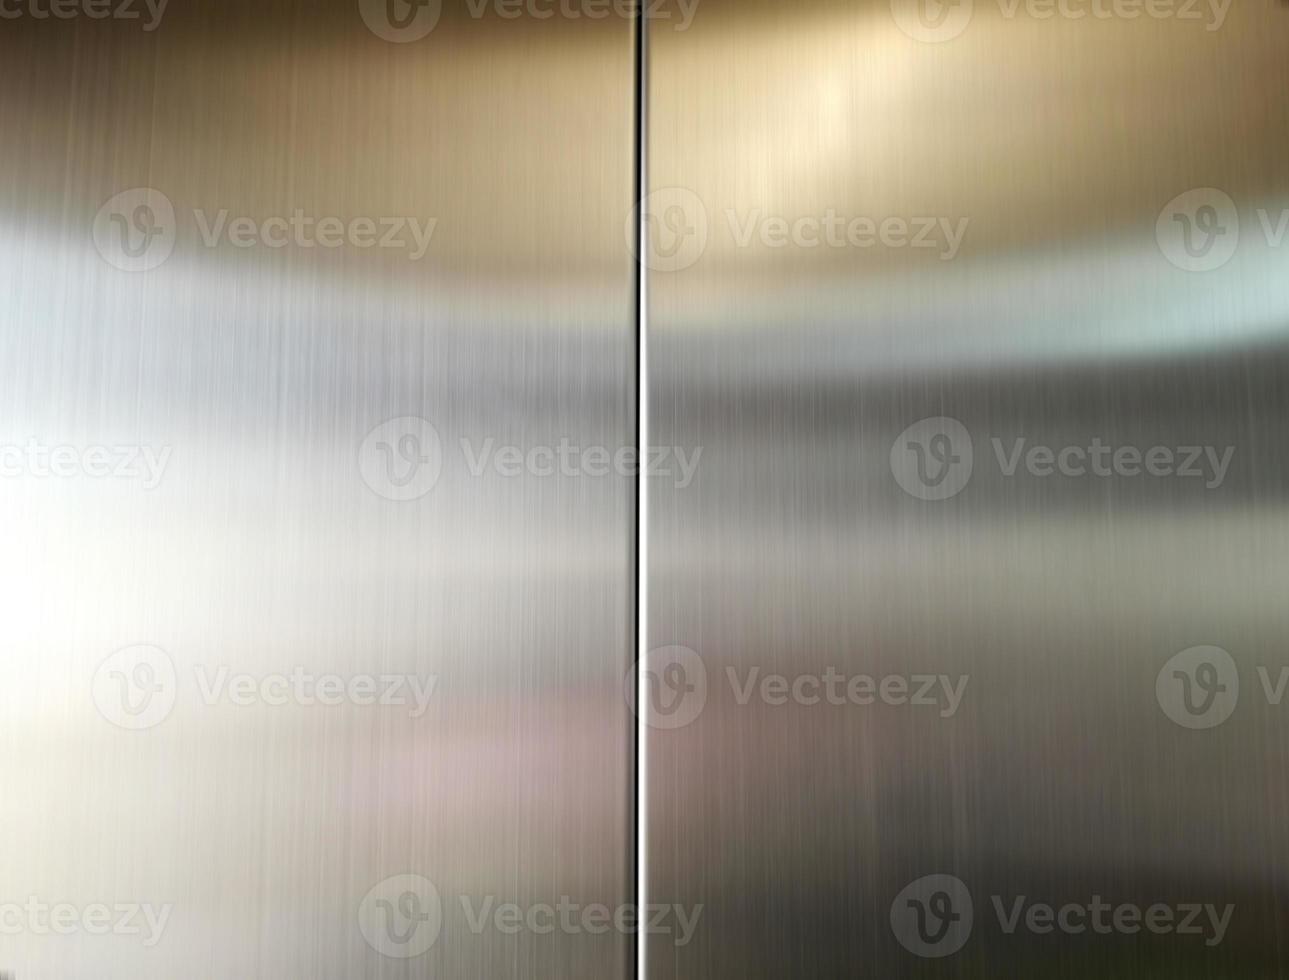 hoja grande de acero inoxidable con luz golpeando la superficie para el fondo, dentro del ascensor de pasajeros, reflejo de la luz en una textura de metal brillante, fondo de acero inoxidable. foto